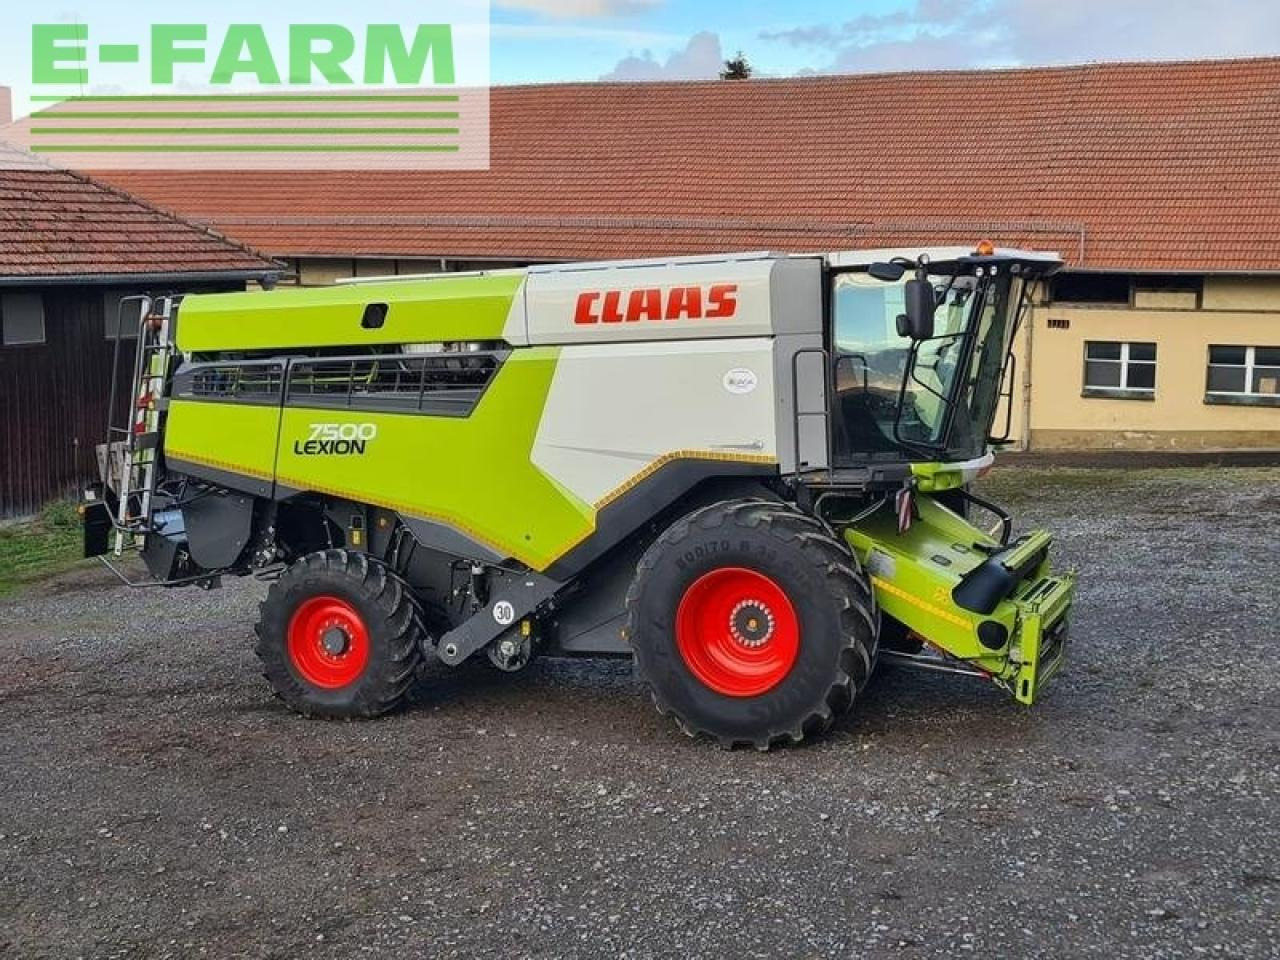 Farm tractor CLAAS lexion 7500